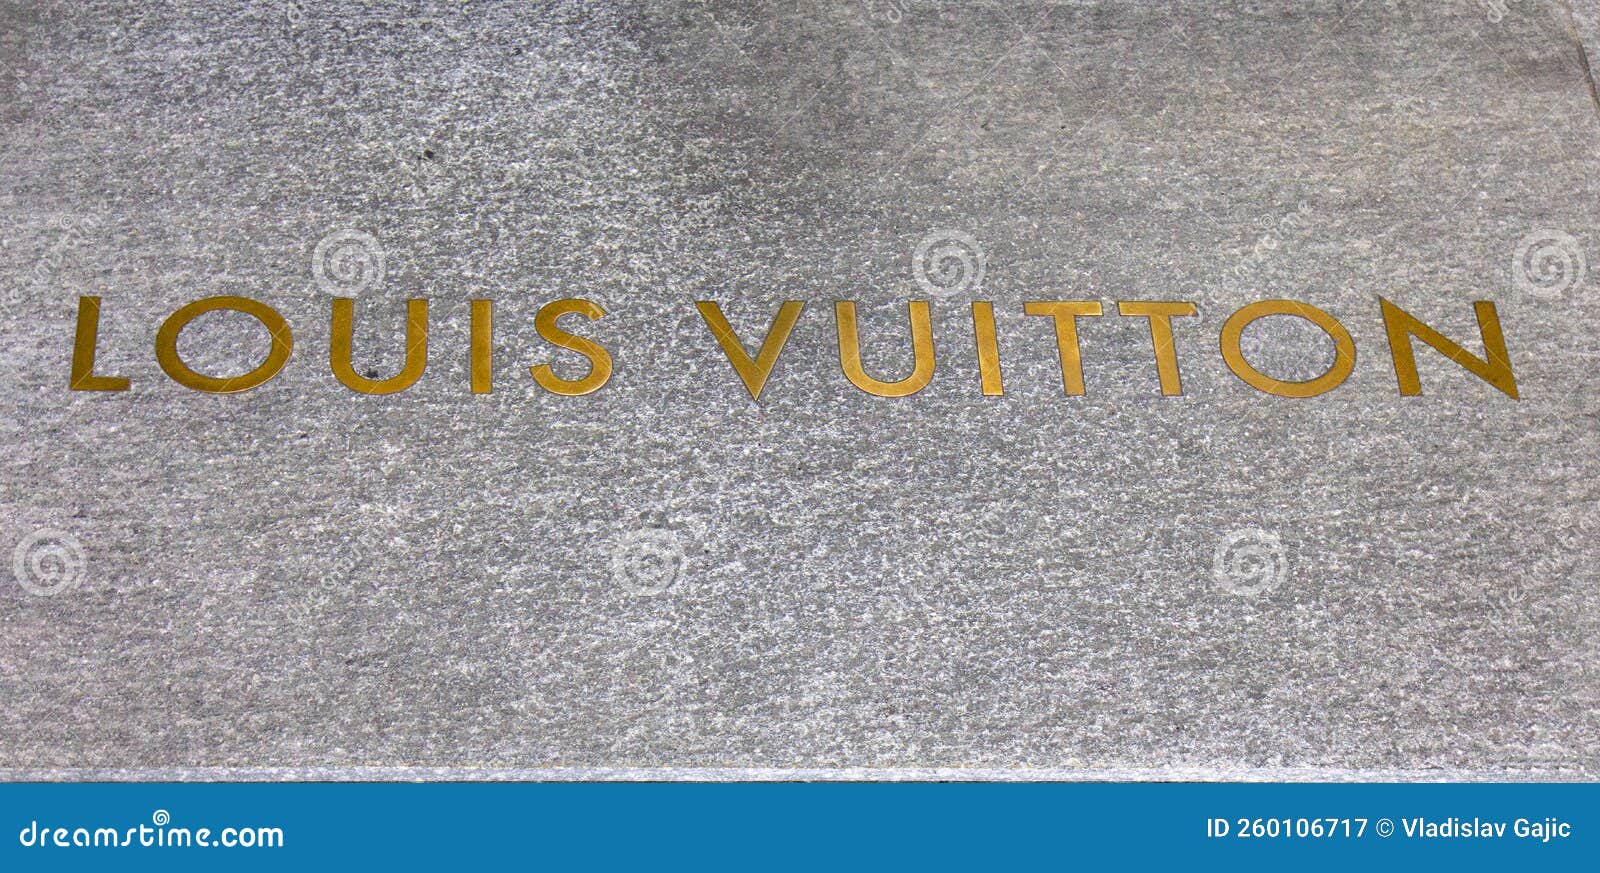 Louis Vuitton Zurich